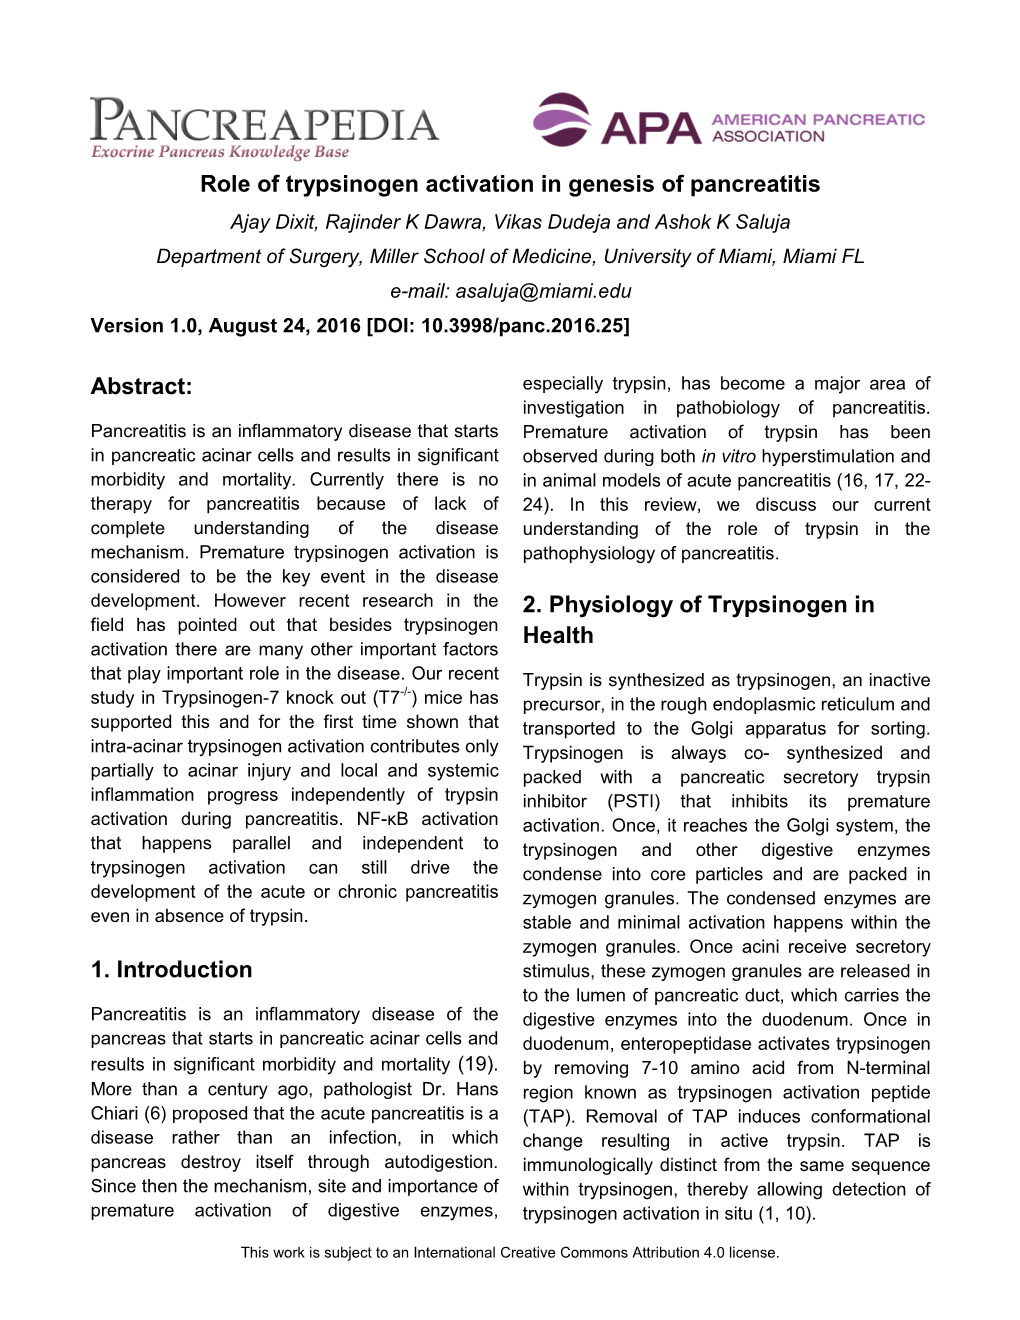 Role of Trypsinogen Activation in Genesis Of